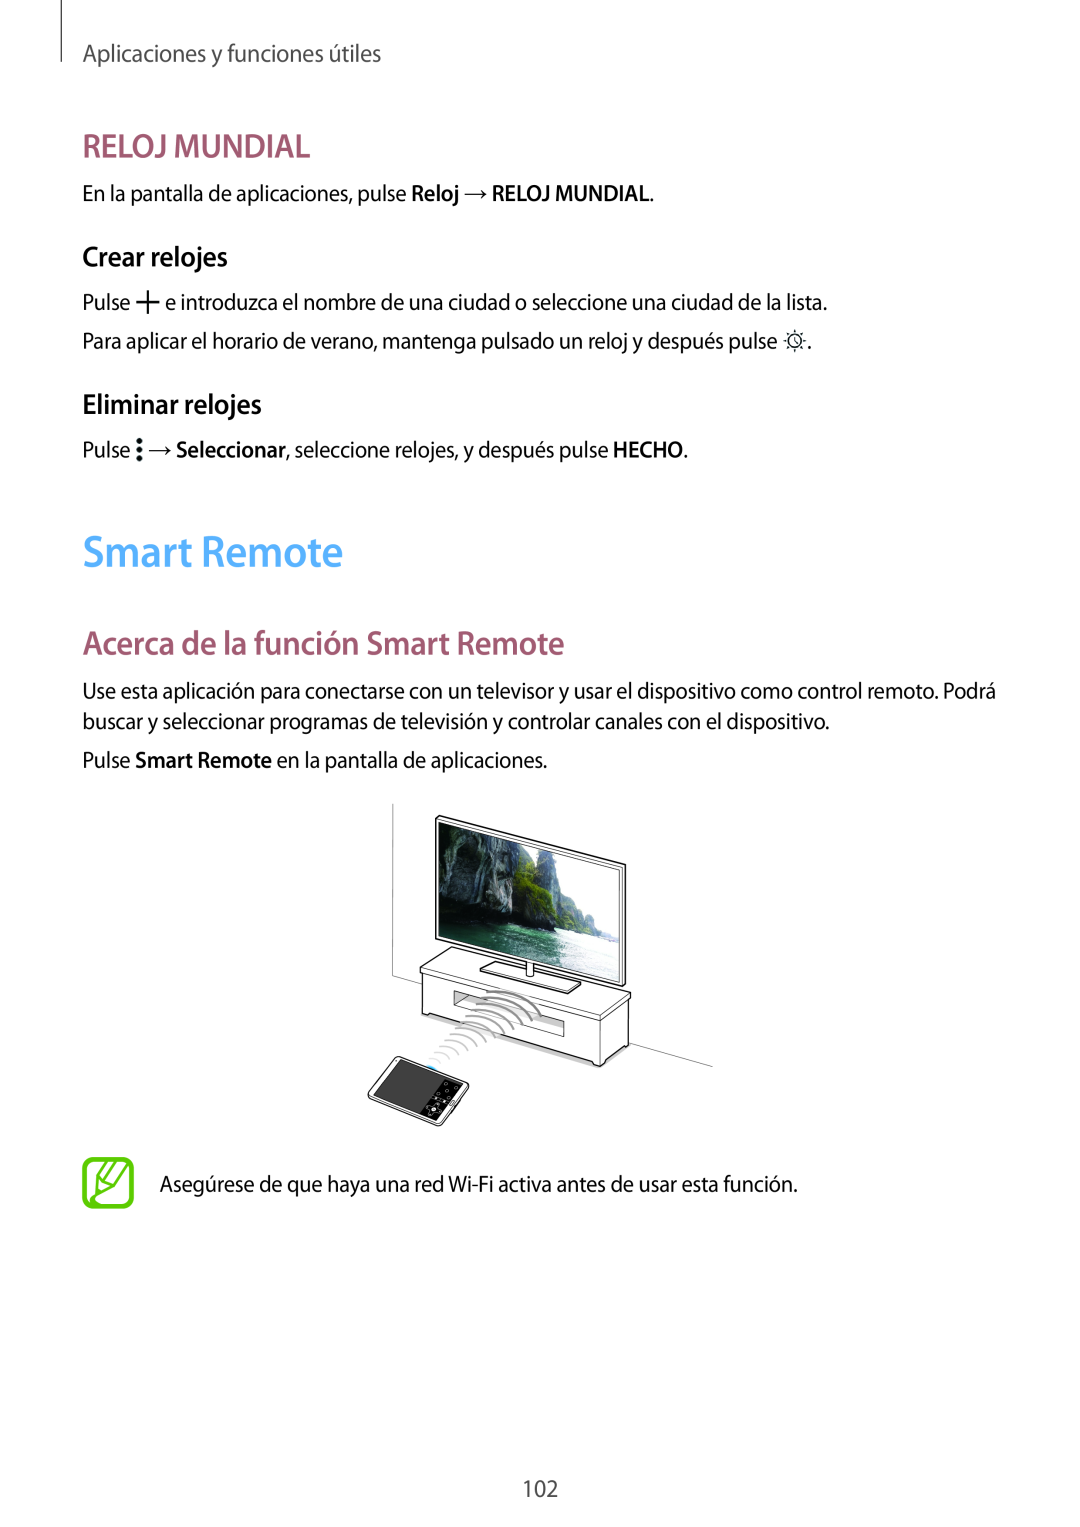 Samsung SM-T700NZWAPHE manual Reloj Mundial, Acerca de la función Smart Remote, Crear relojes, Eliminar relojes 